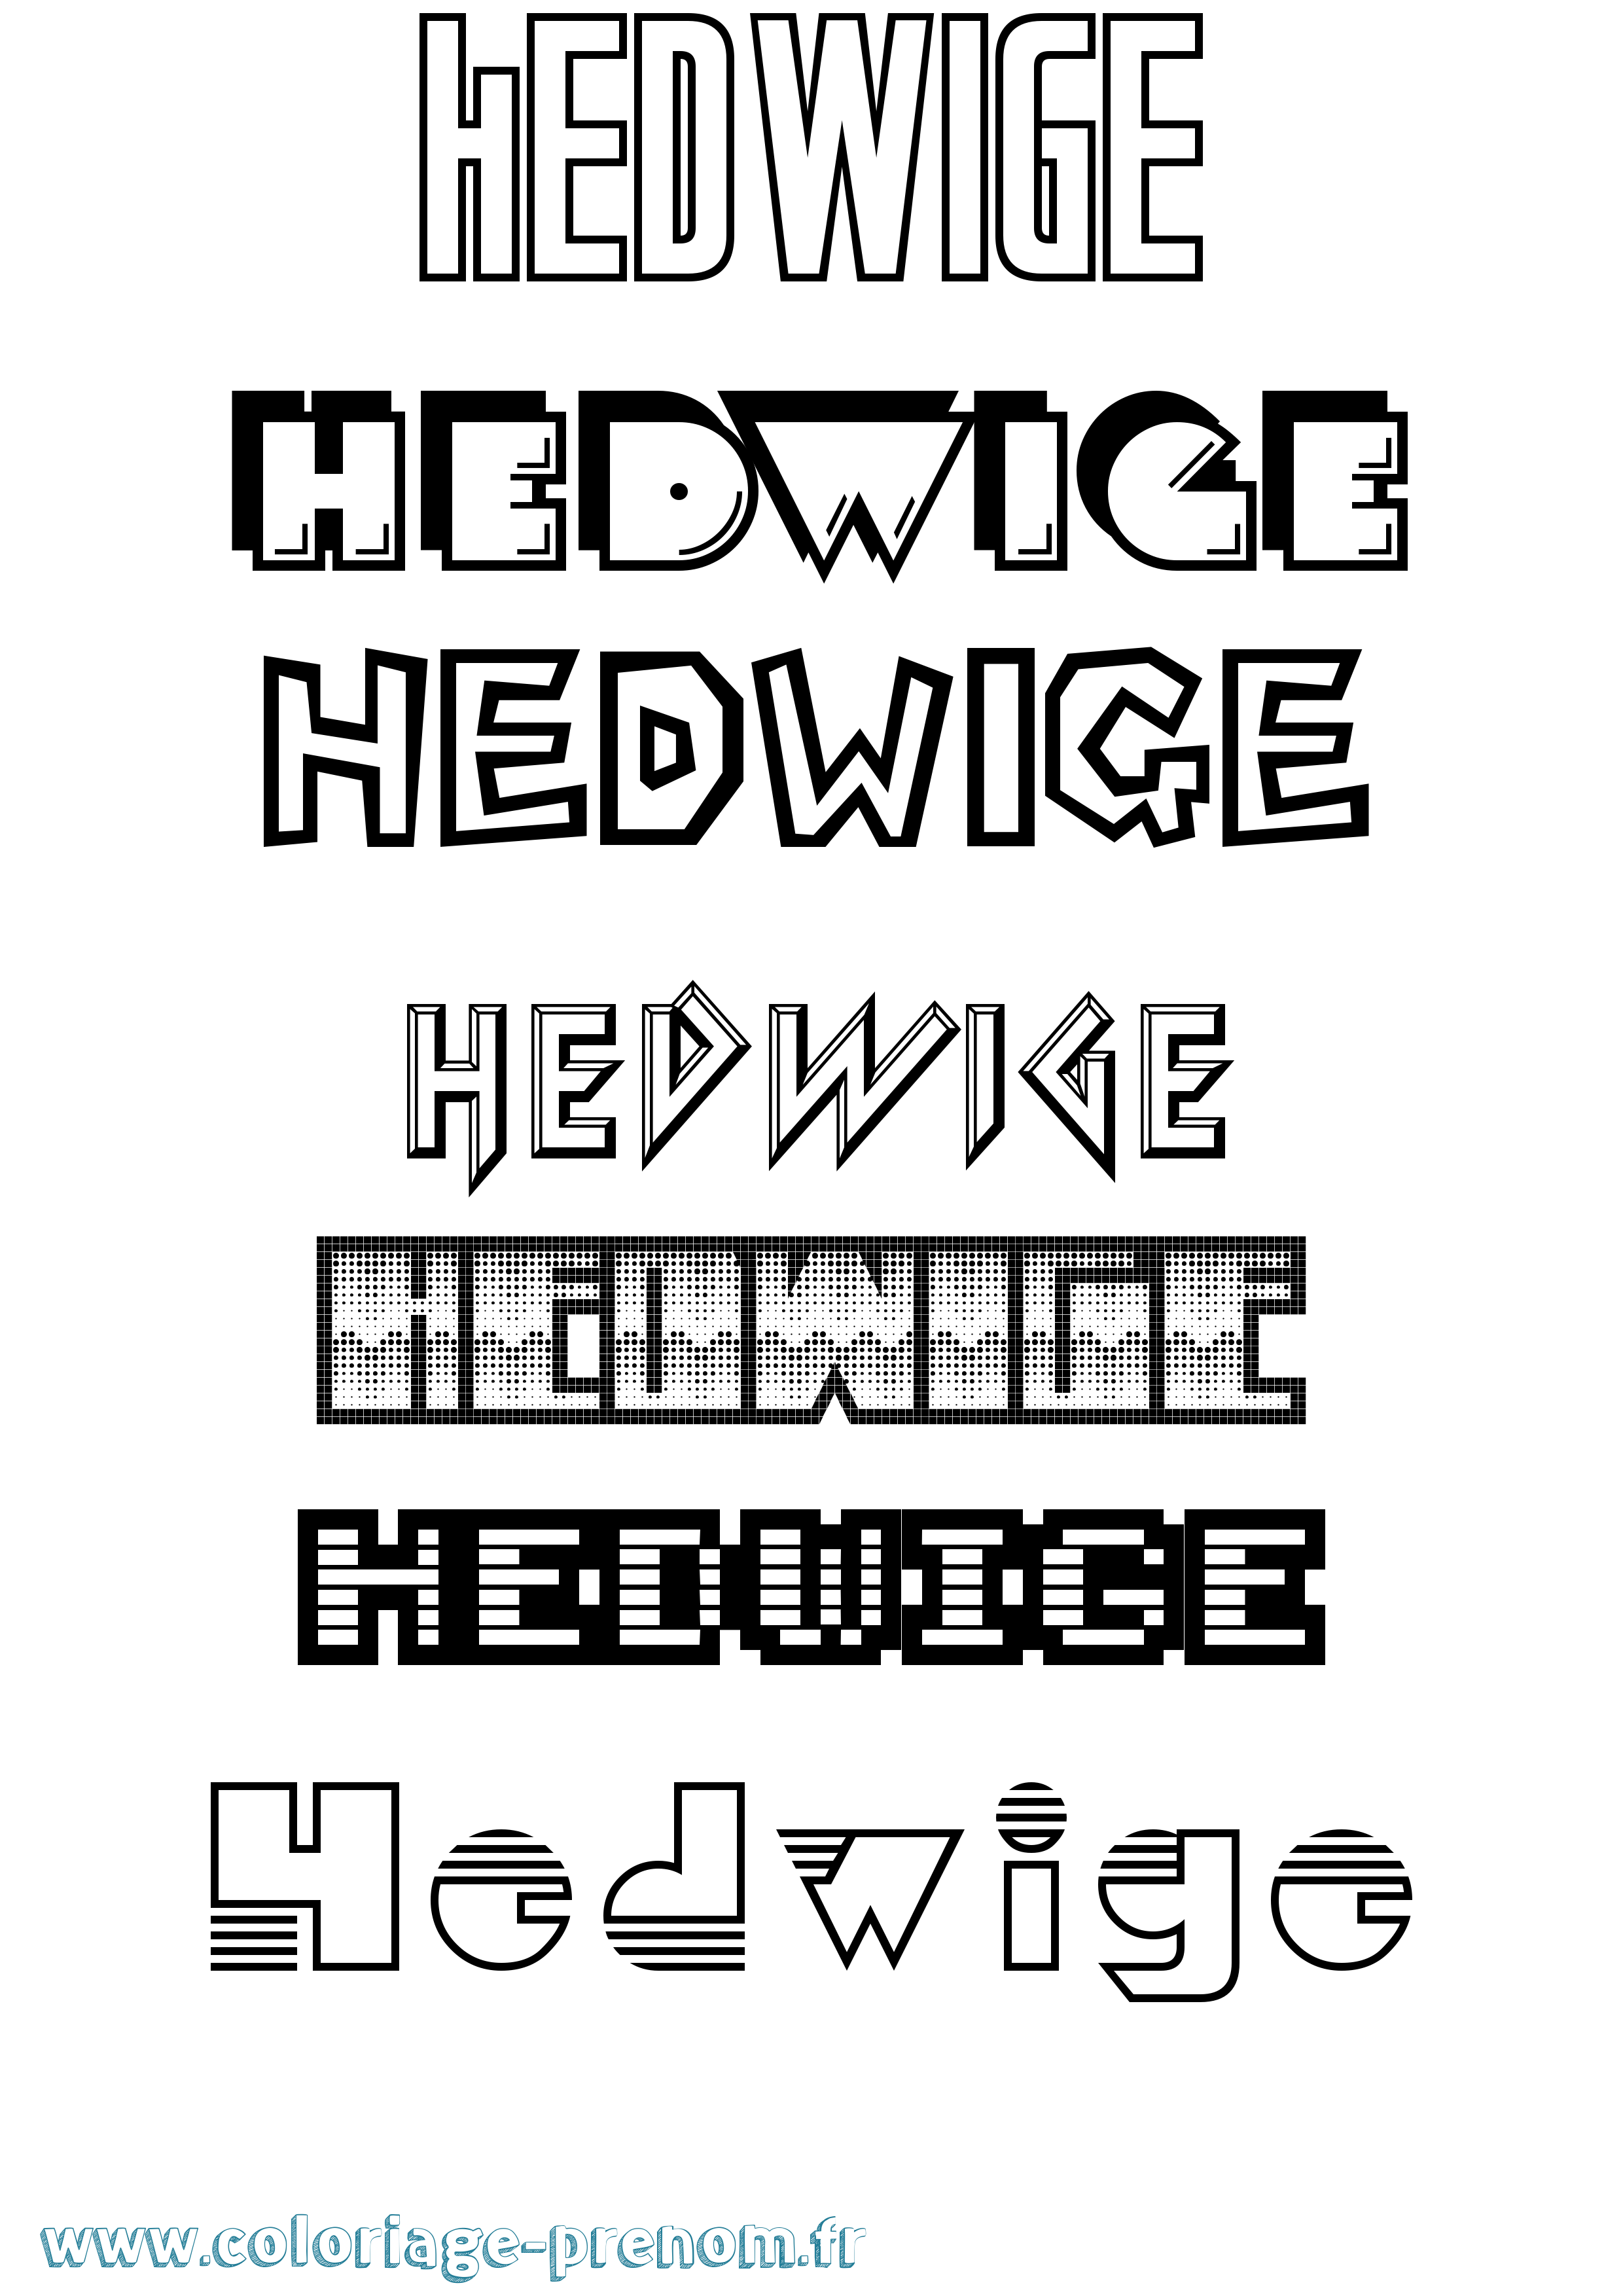 Coloriage prénom Hedwige Jeux Vidéos